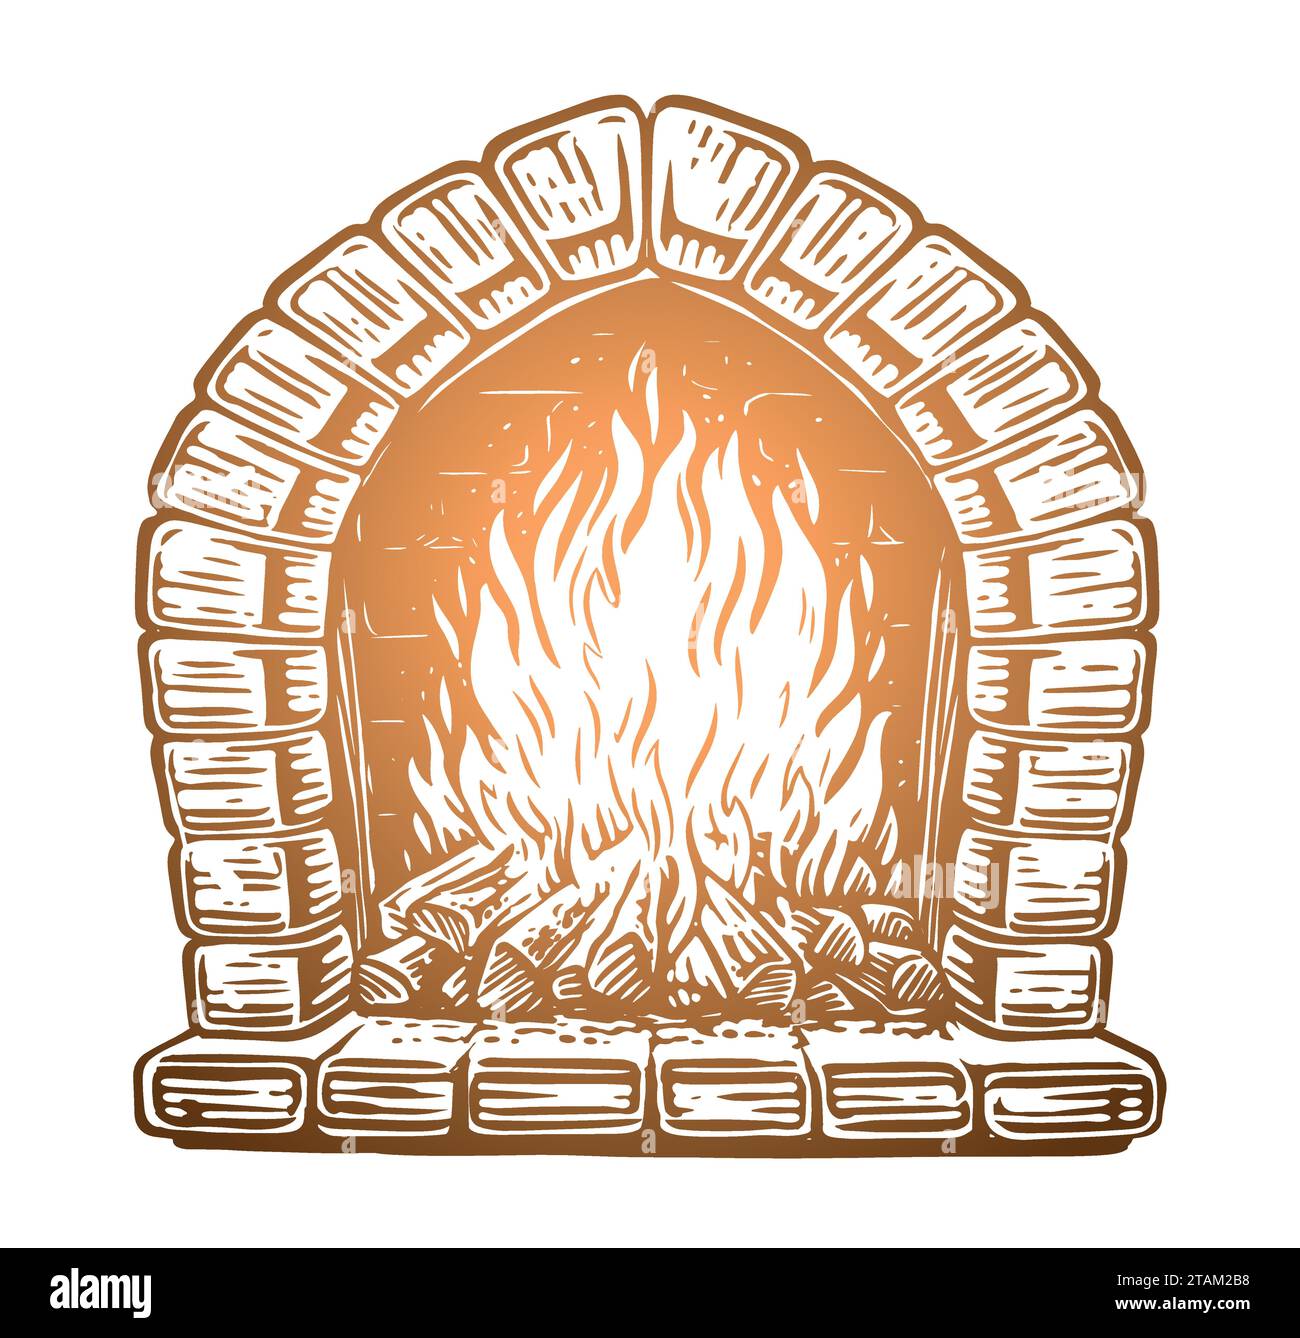 Holz brennt im Kamin. Feuer im Steinofen. Handgezeichnete Vektorgrafik Stock Vektor